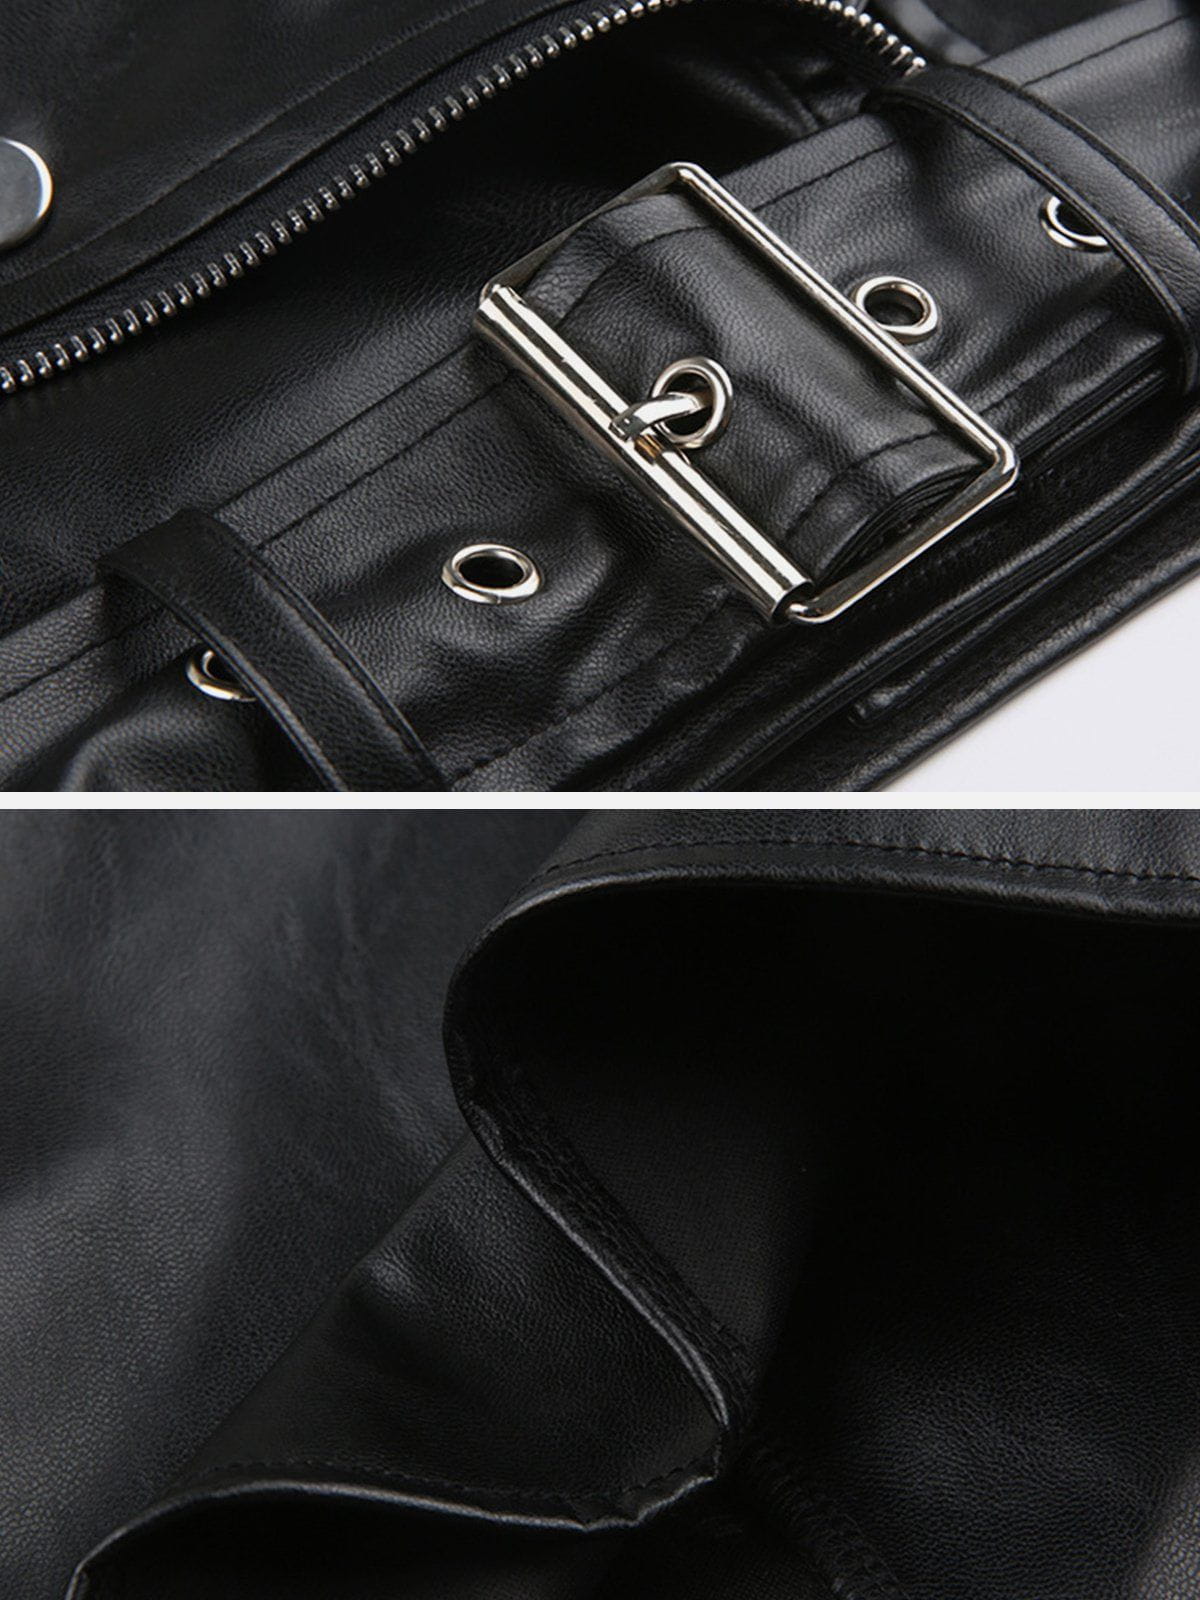 Eprezzy® - Metal Buckle Zipper Leather Racing Jacket Streetwear Fashion - eprezzy.com